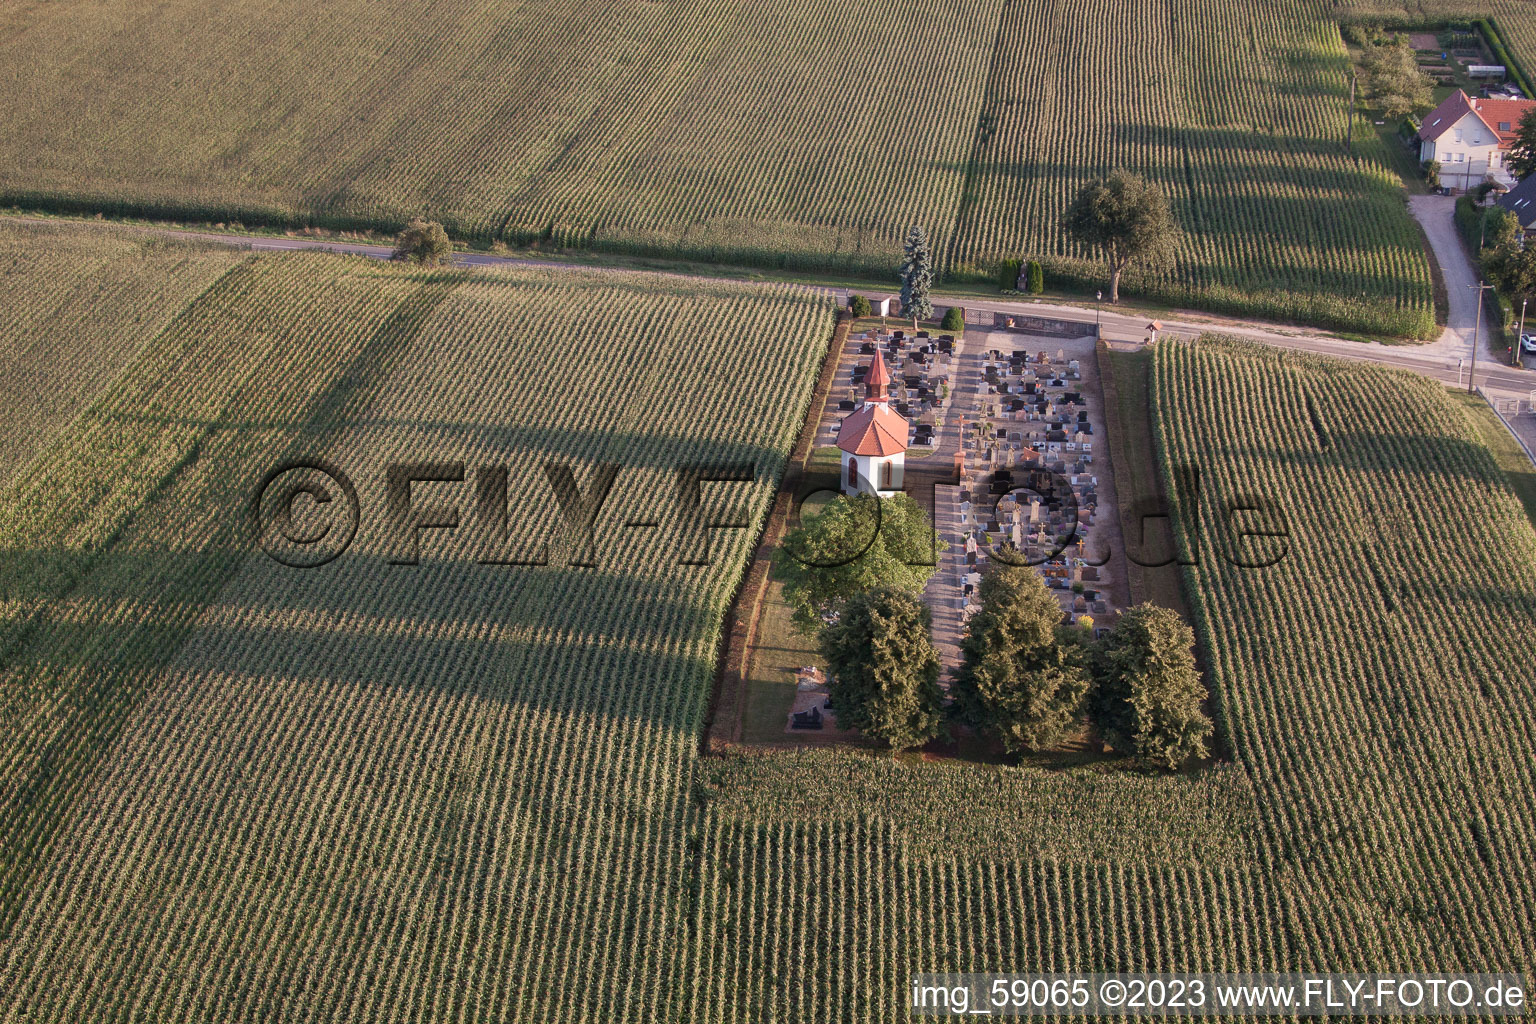 Salmbach im Bundesland Bas-Rhin, Frankreich aus der Drohnenperspektive